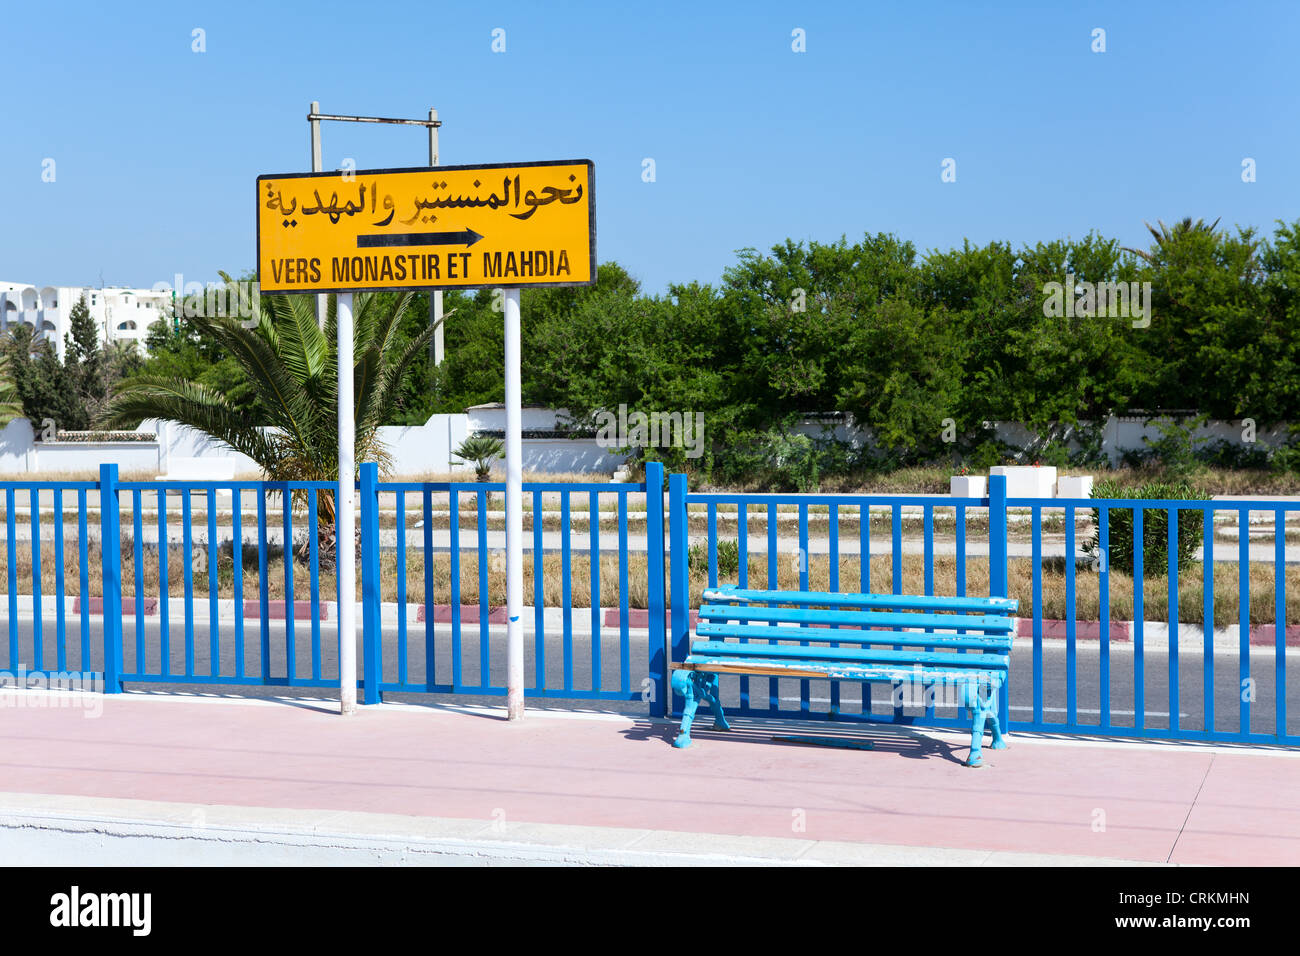 Una targhetta indicante la direzione a Monastir e Mahdia in arabo e in francese presso la stazione ferroviaria, Tunisia Foto Stock